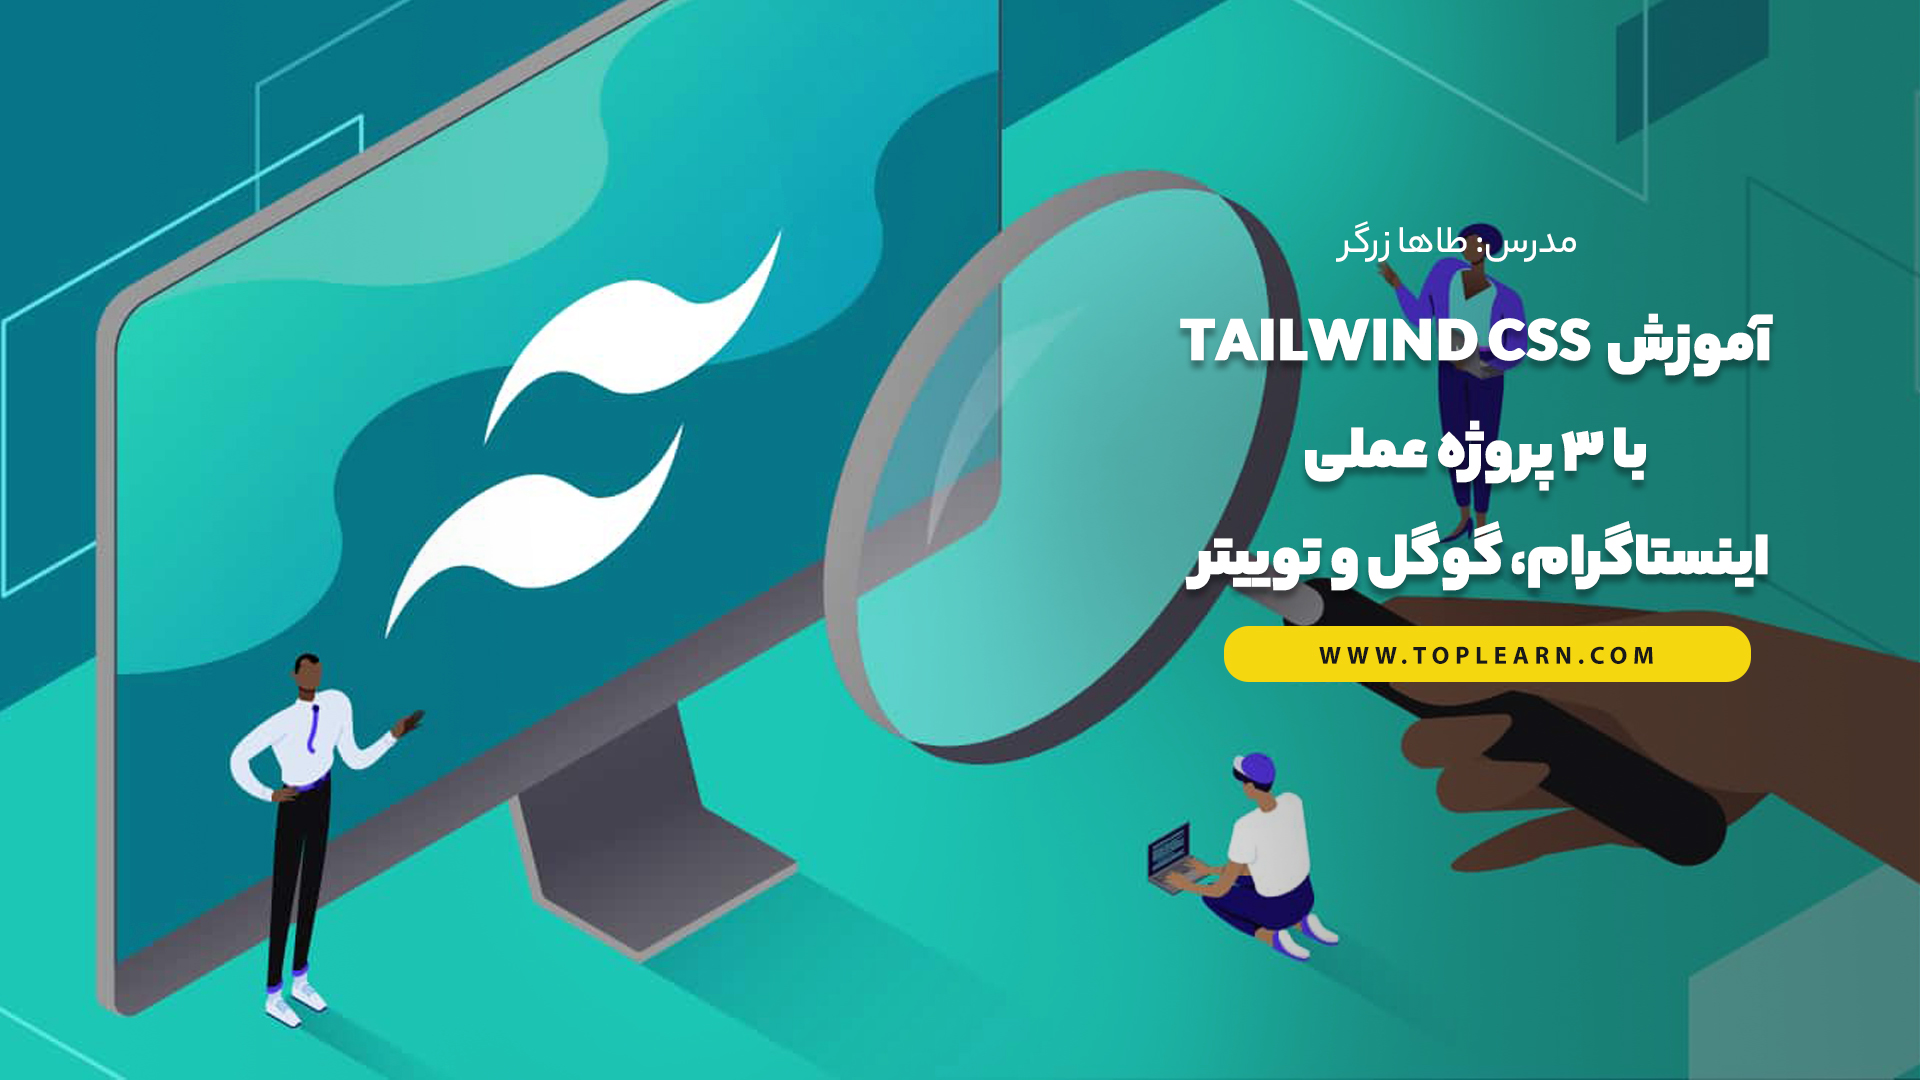 آموزش Tailwind css با 3 پروژه عملی اینستاگرام، گوگل و توییتر